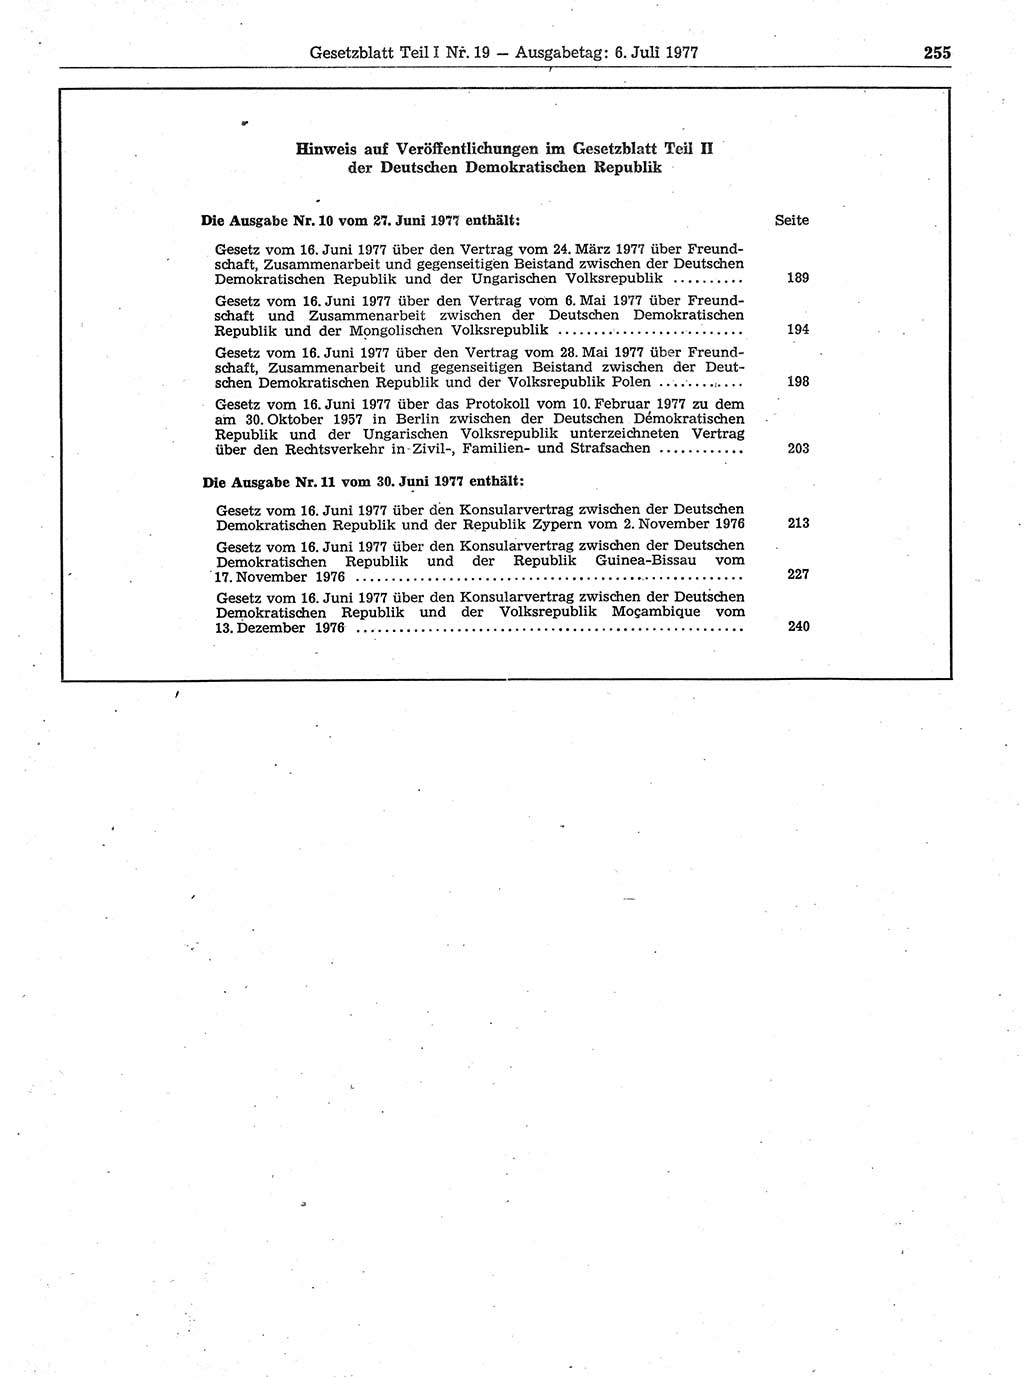 Gesetzblatt (GBl.) der Deutschen Demokratischen Republik (DDR) Teil Ⅰ 1977, Seite 255 (GBl. DDR Ⅰ 1977, S. 255)